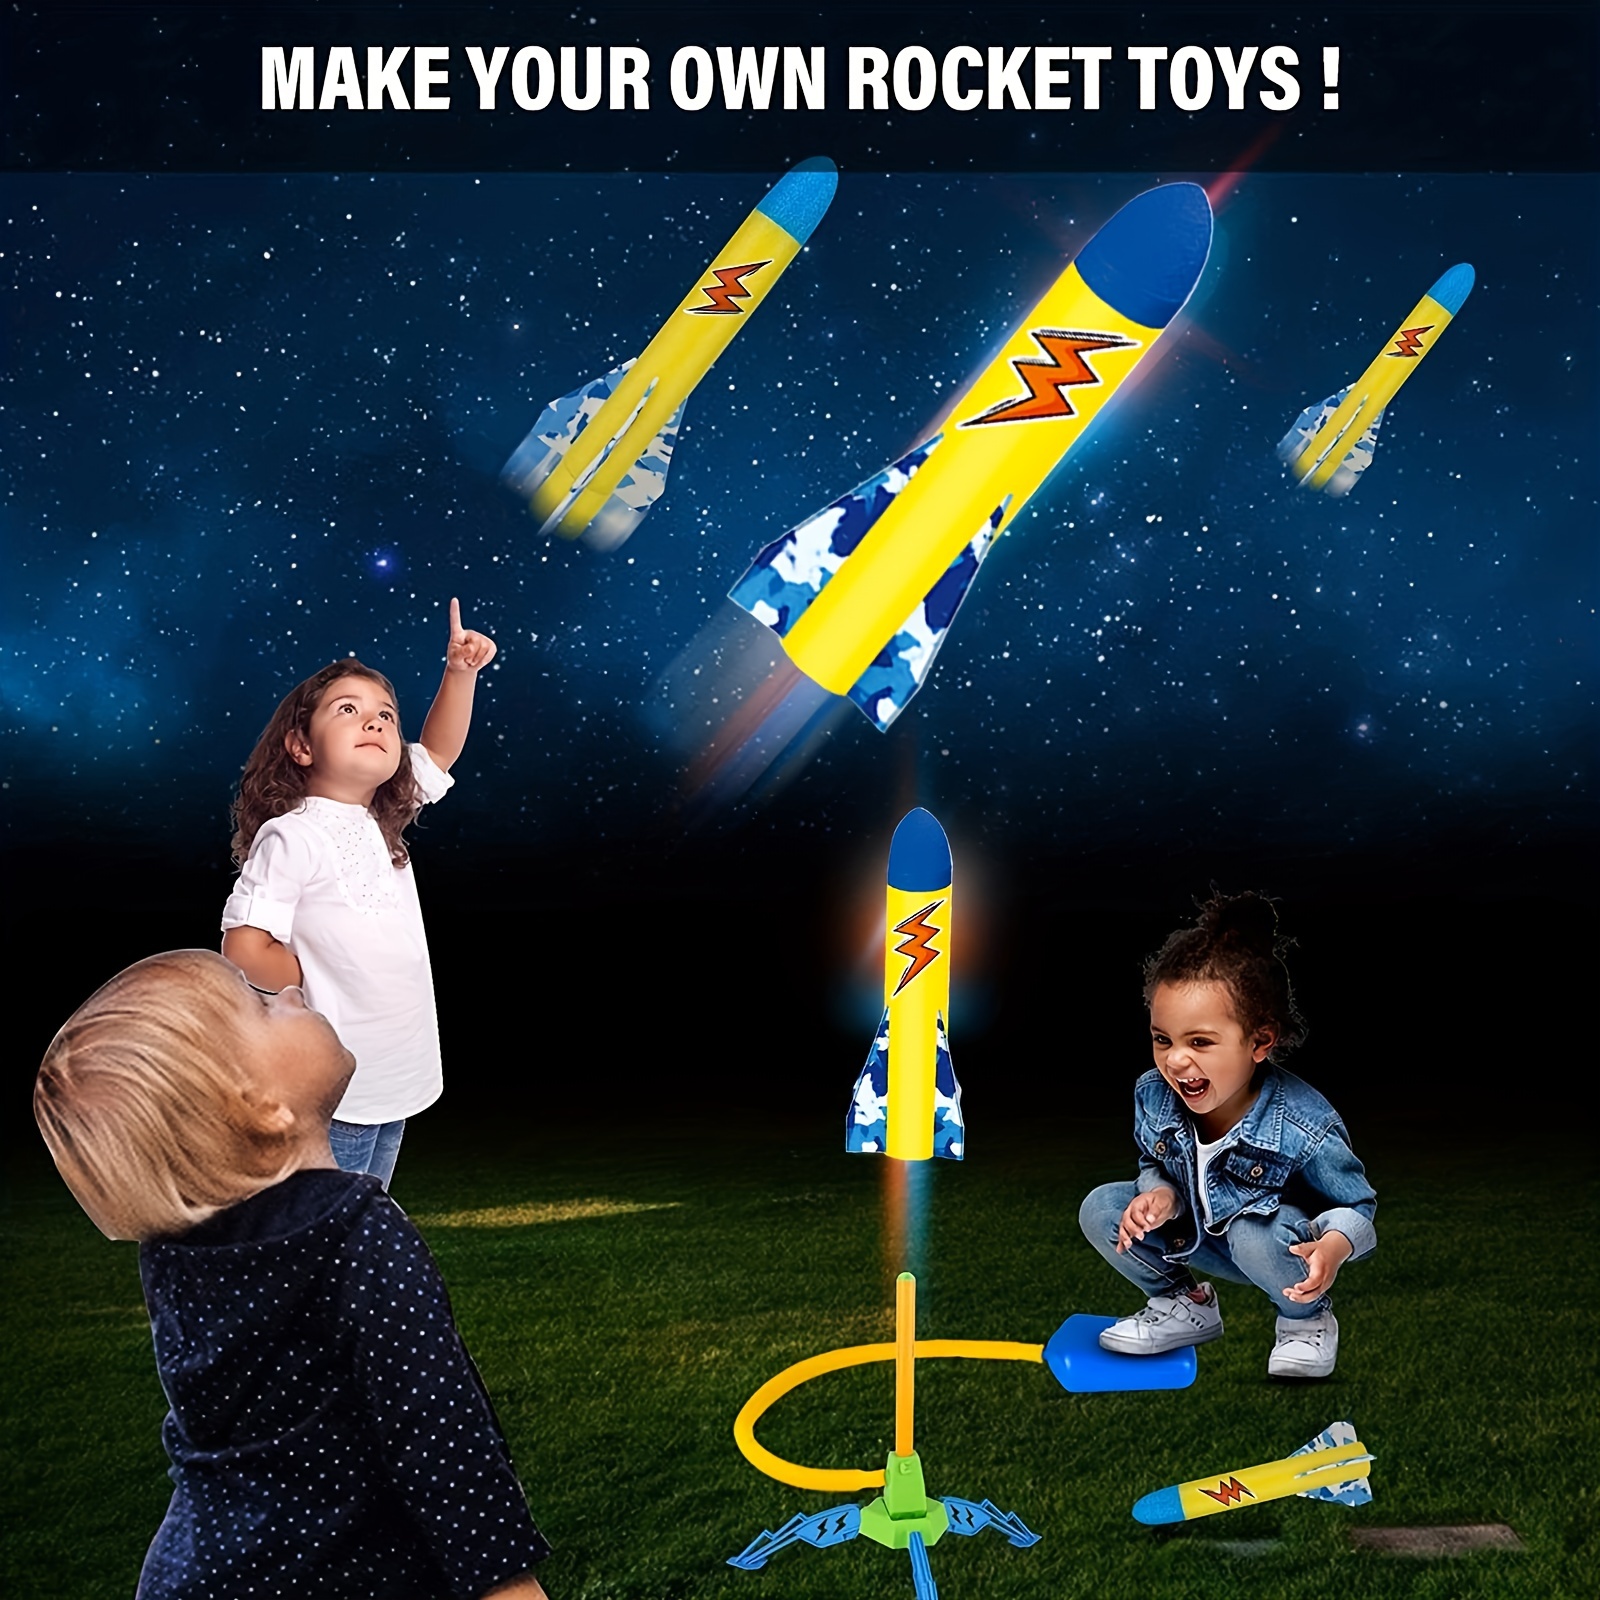 Jouet Lance-roquettes Pour Enfants - Tire Jusqu'à 100 Pieds Et Plus, 3  Fusées En Mousse Colorées, Rampe De Lancement - Jouet D'extérieur Amusant  Pour